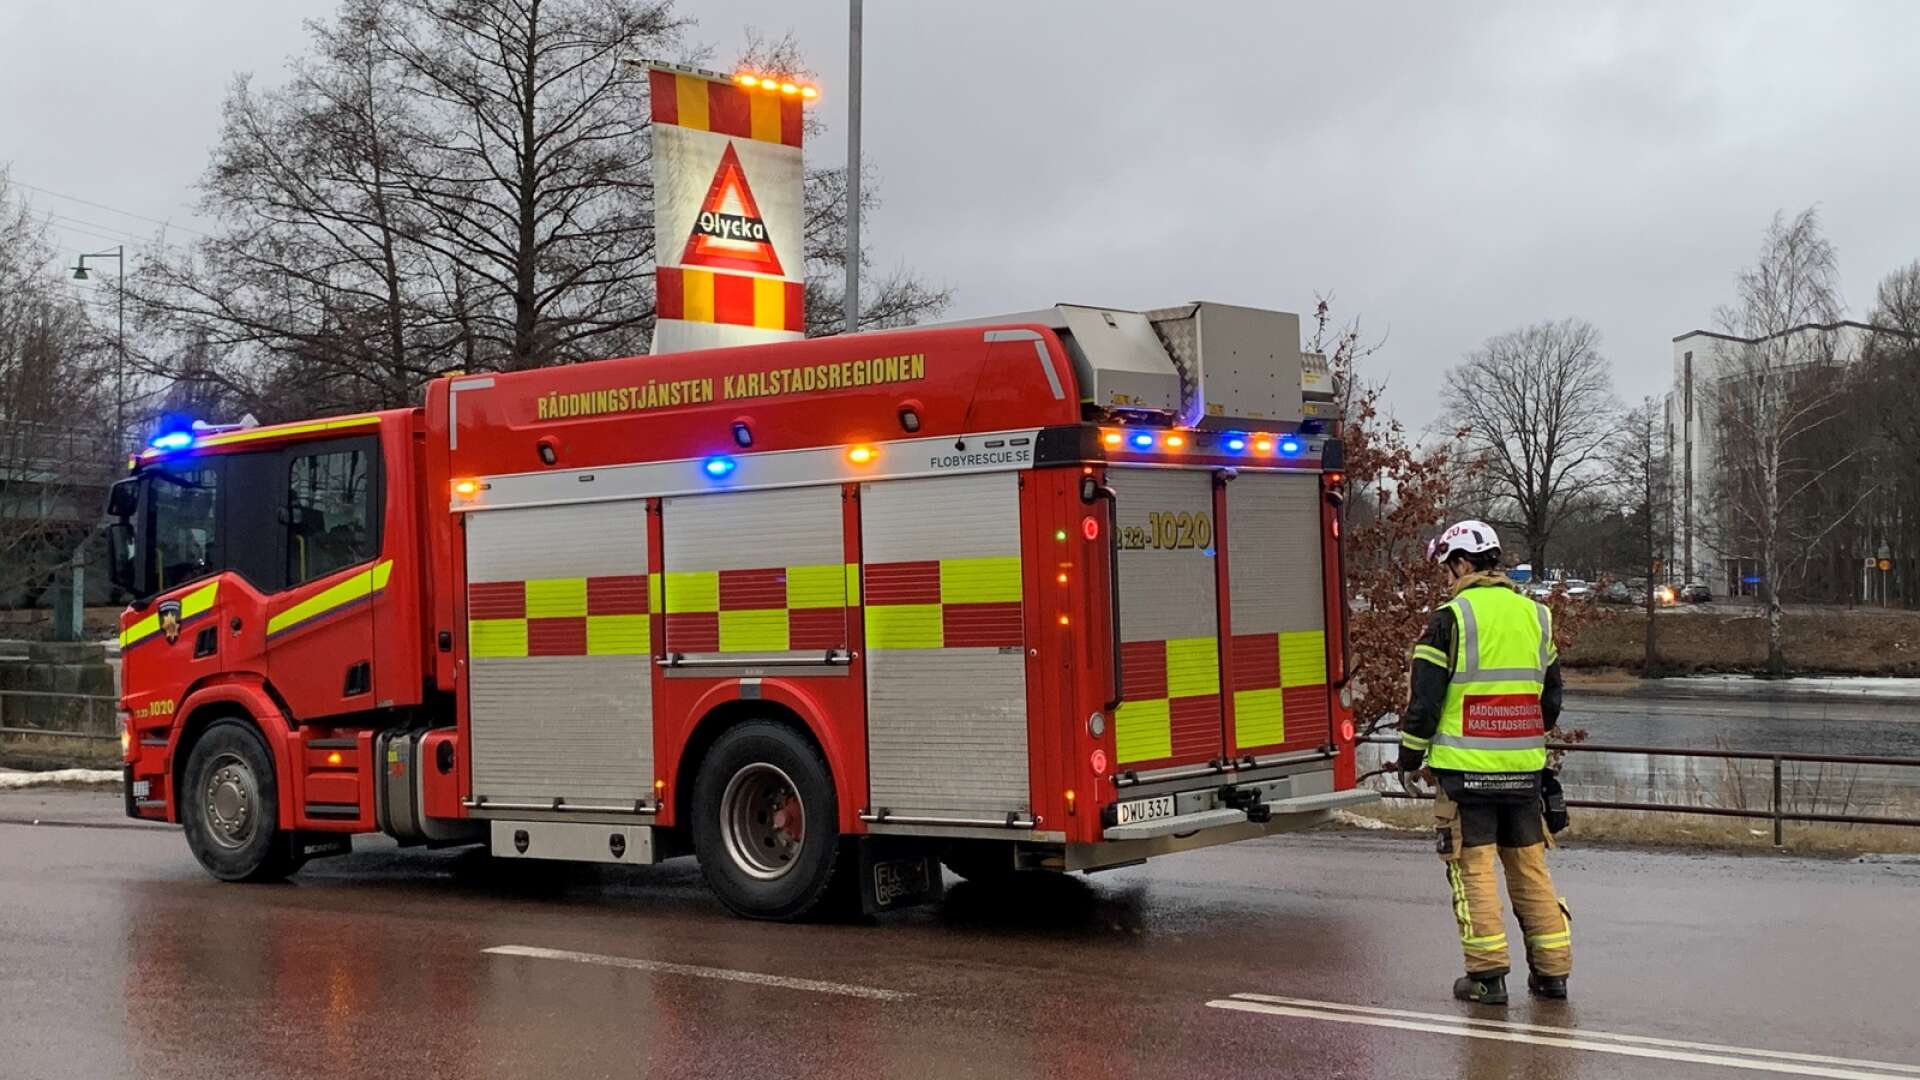 1 880 insatser under 2022, summerar Räddningstjänsten Karlstadsregionen. 